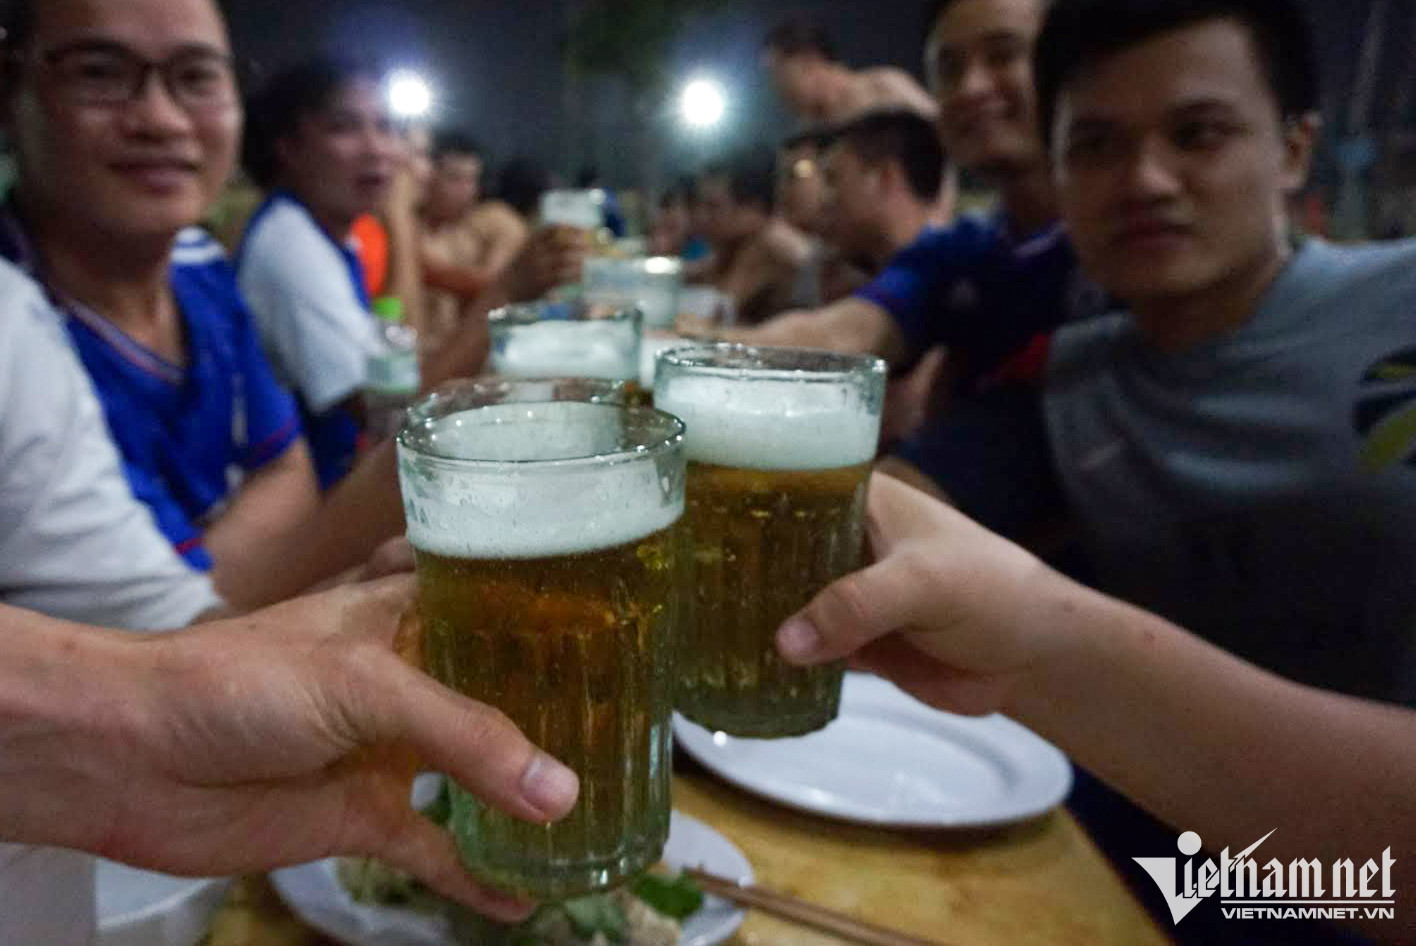 Top đặc sản bia hơi Hà Nội sẽ mang đến cho bạn một trải nghiệm thú vị với những loại bia hơi độc đáo và ngon nhất. Xem hình ảnh để biết thêm chi tiết về các loại bia và thưởng thức cùng bạn bè và gia đình.